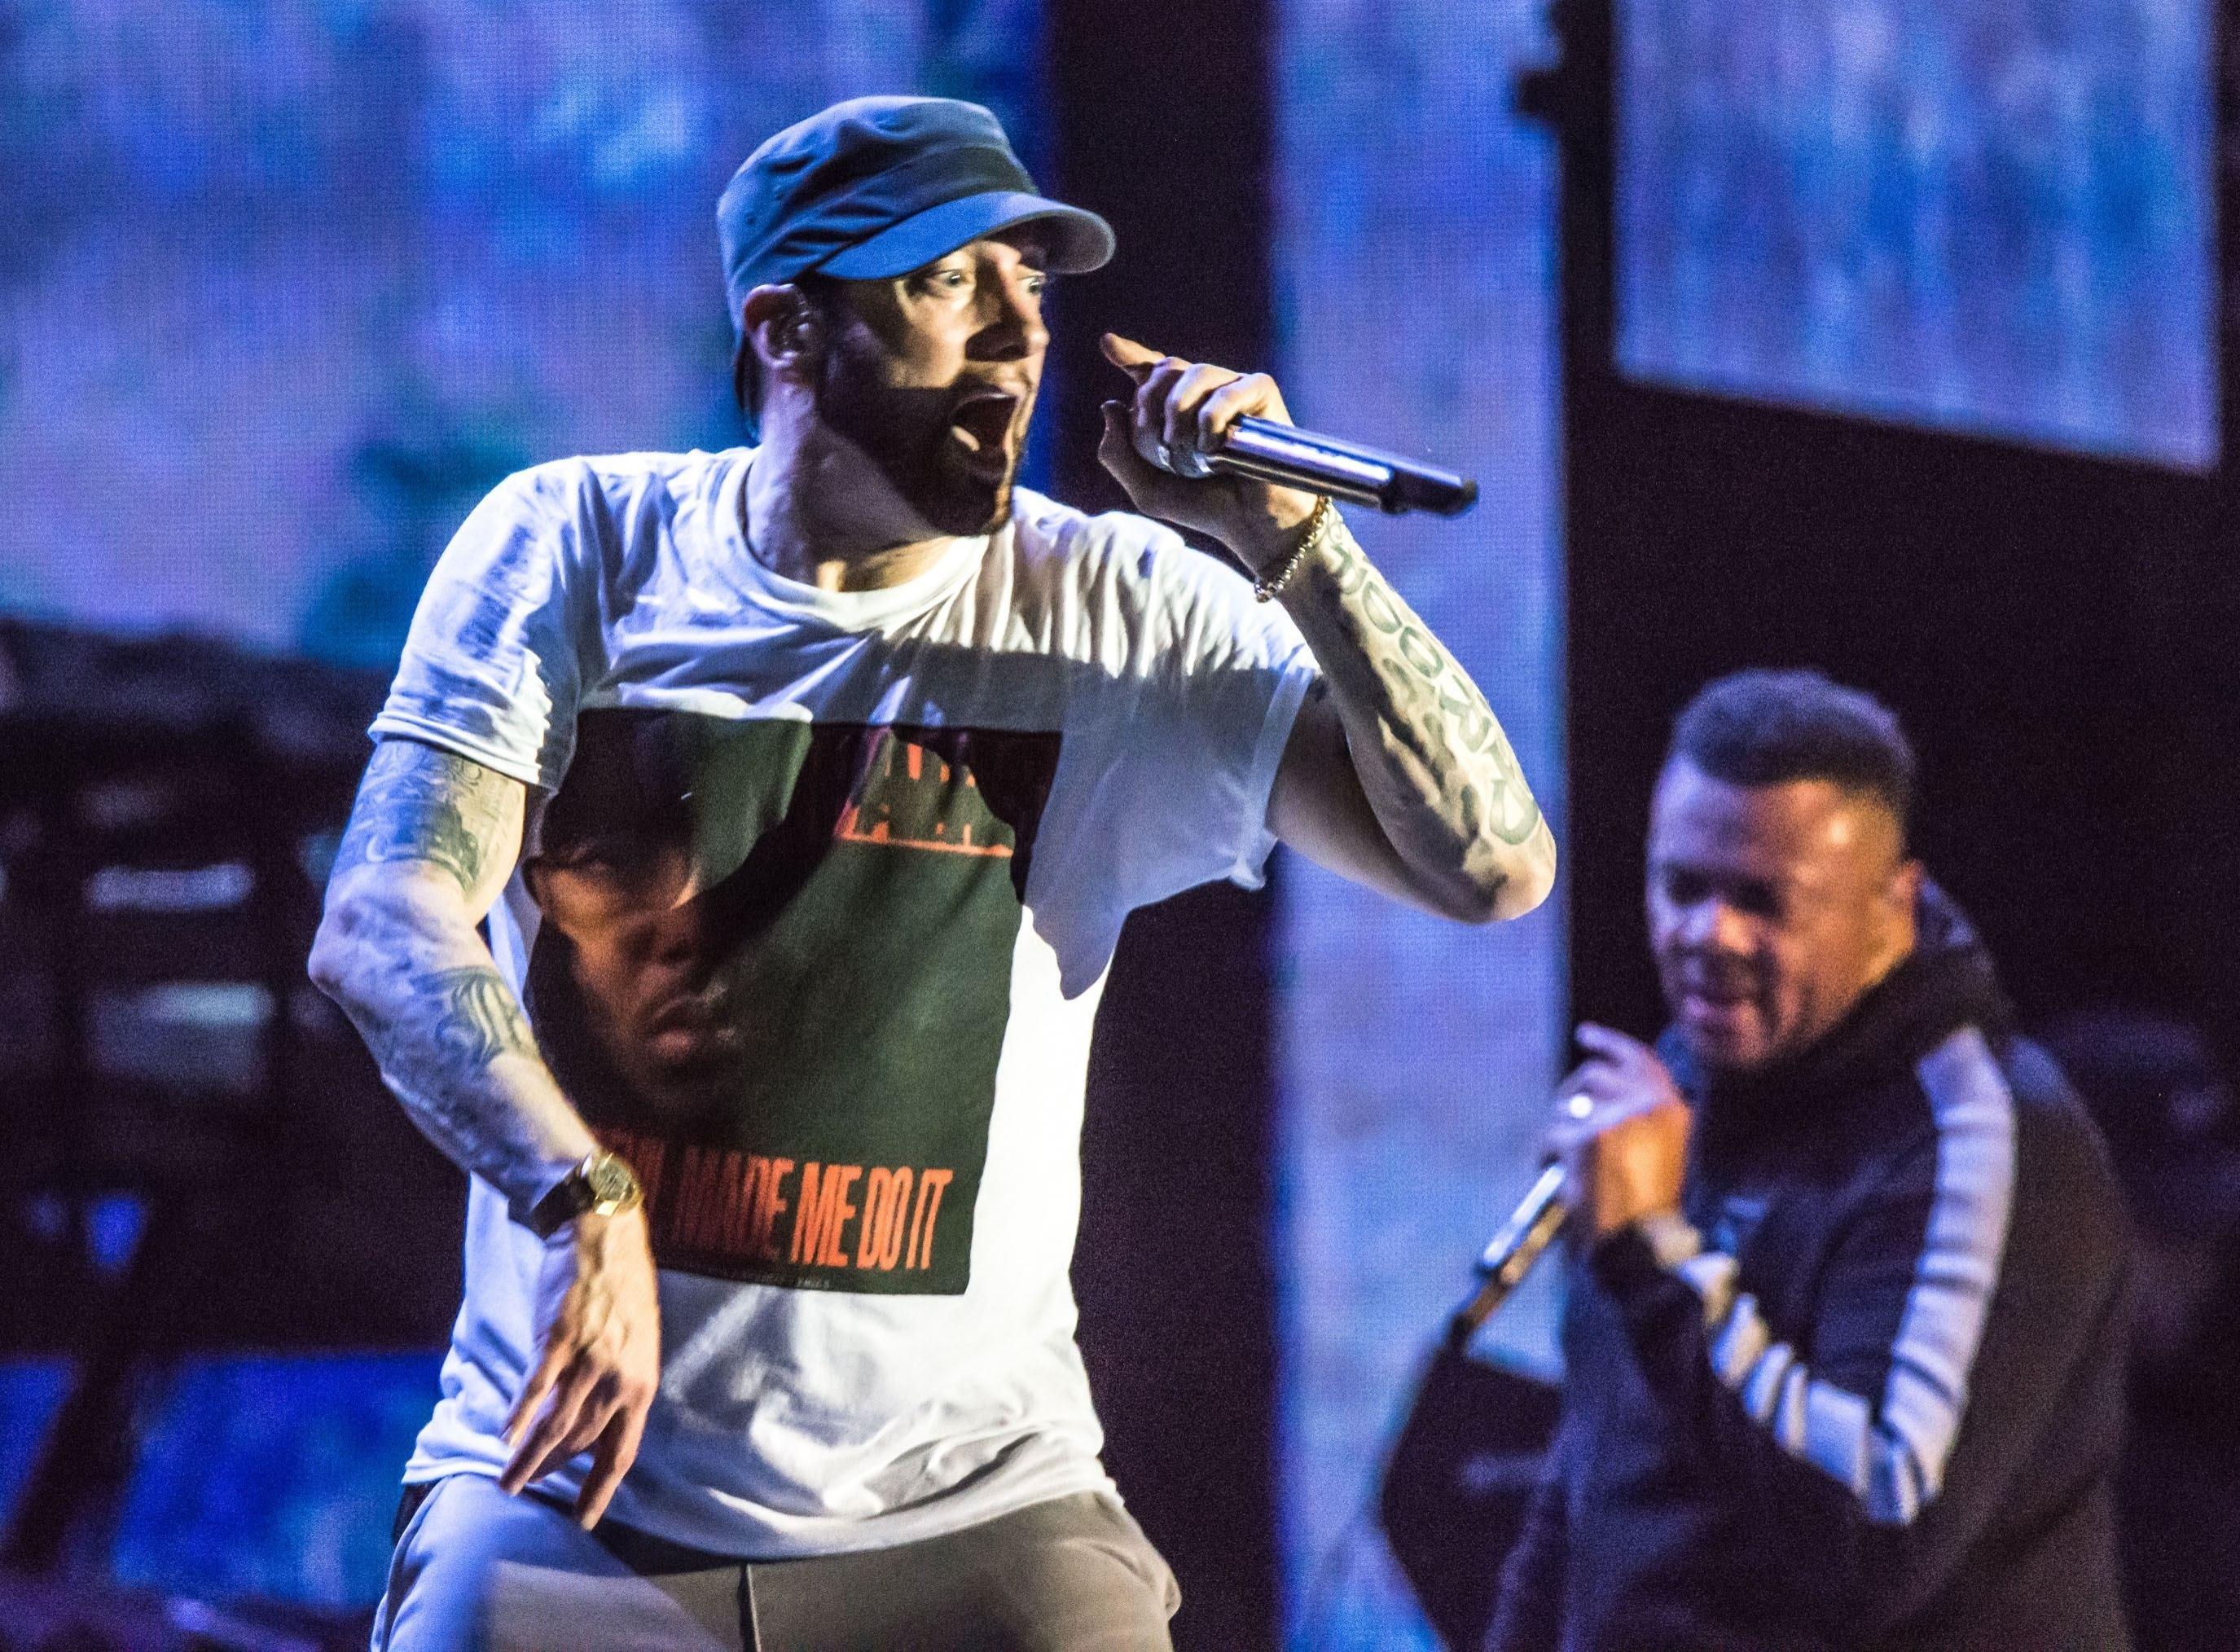 Eminem, îmbrăcat cu un tricou alb, cântă pe scenă, live